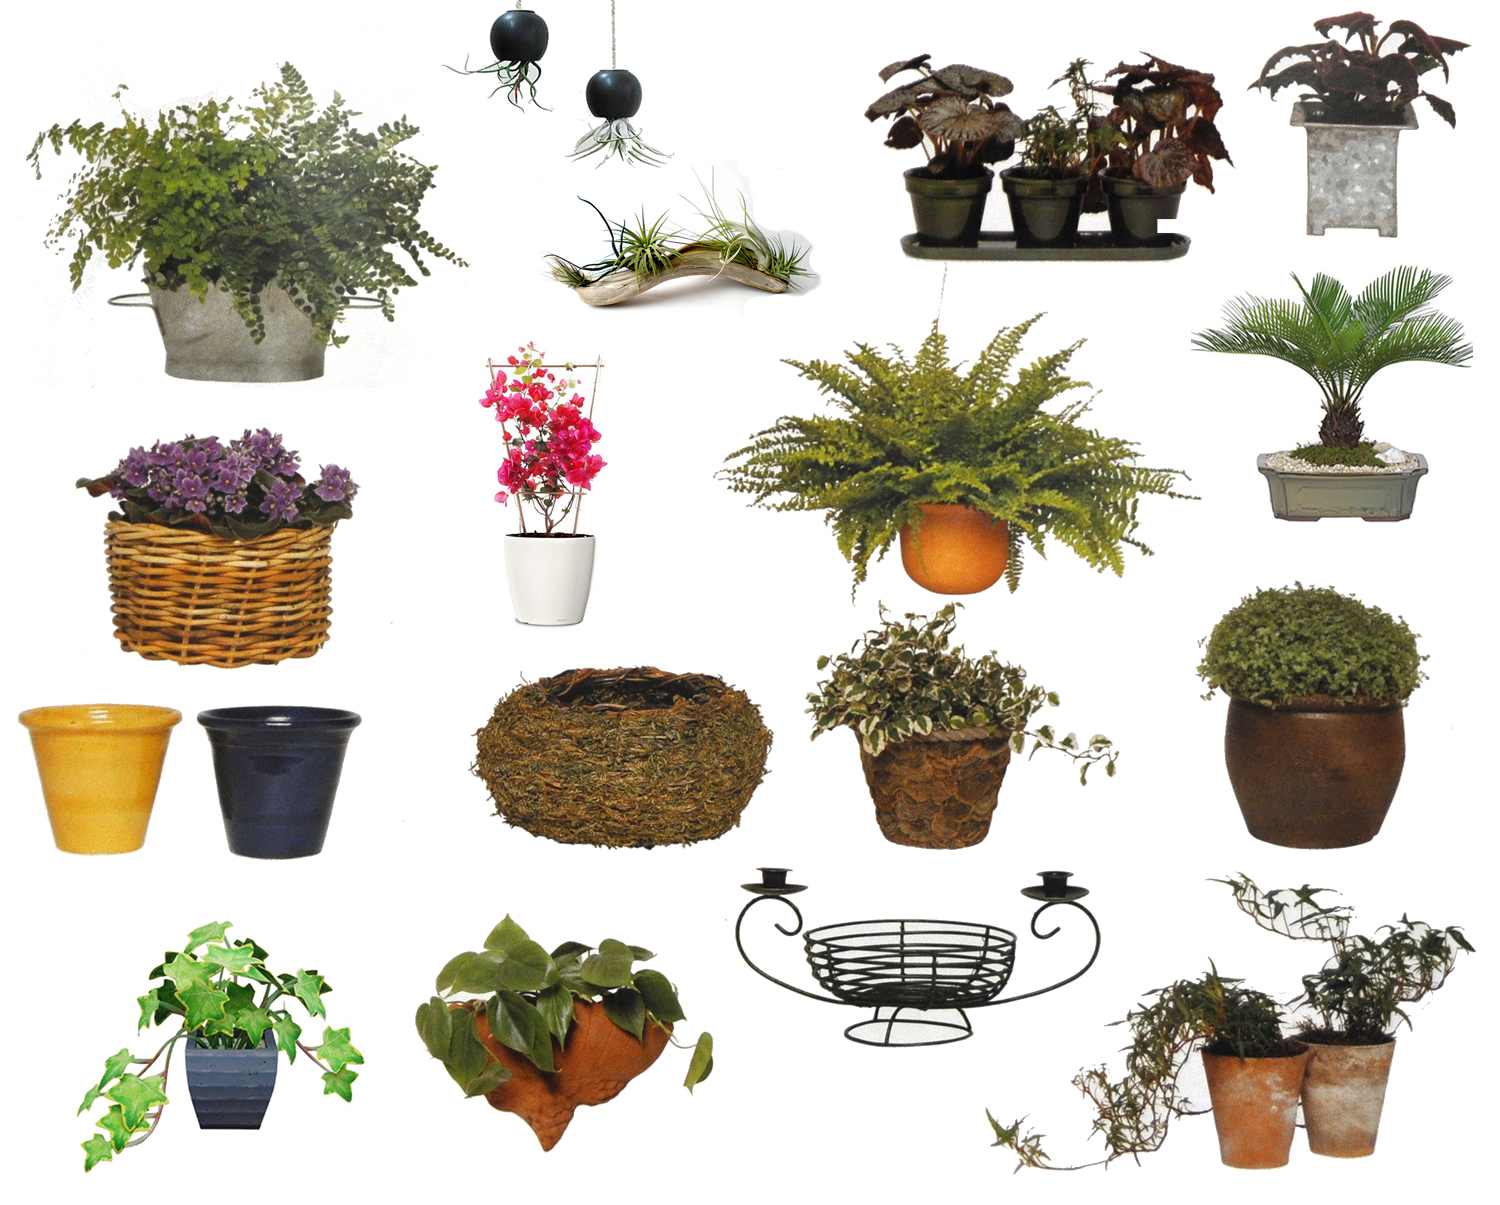 Plants & Flowers » Plant vs. Pot size